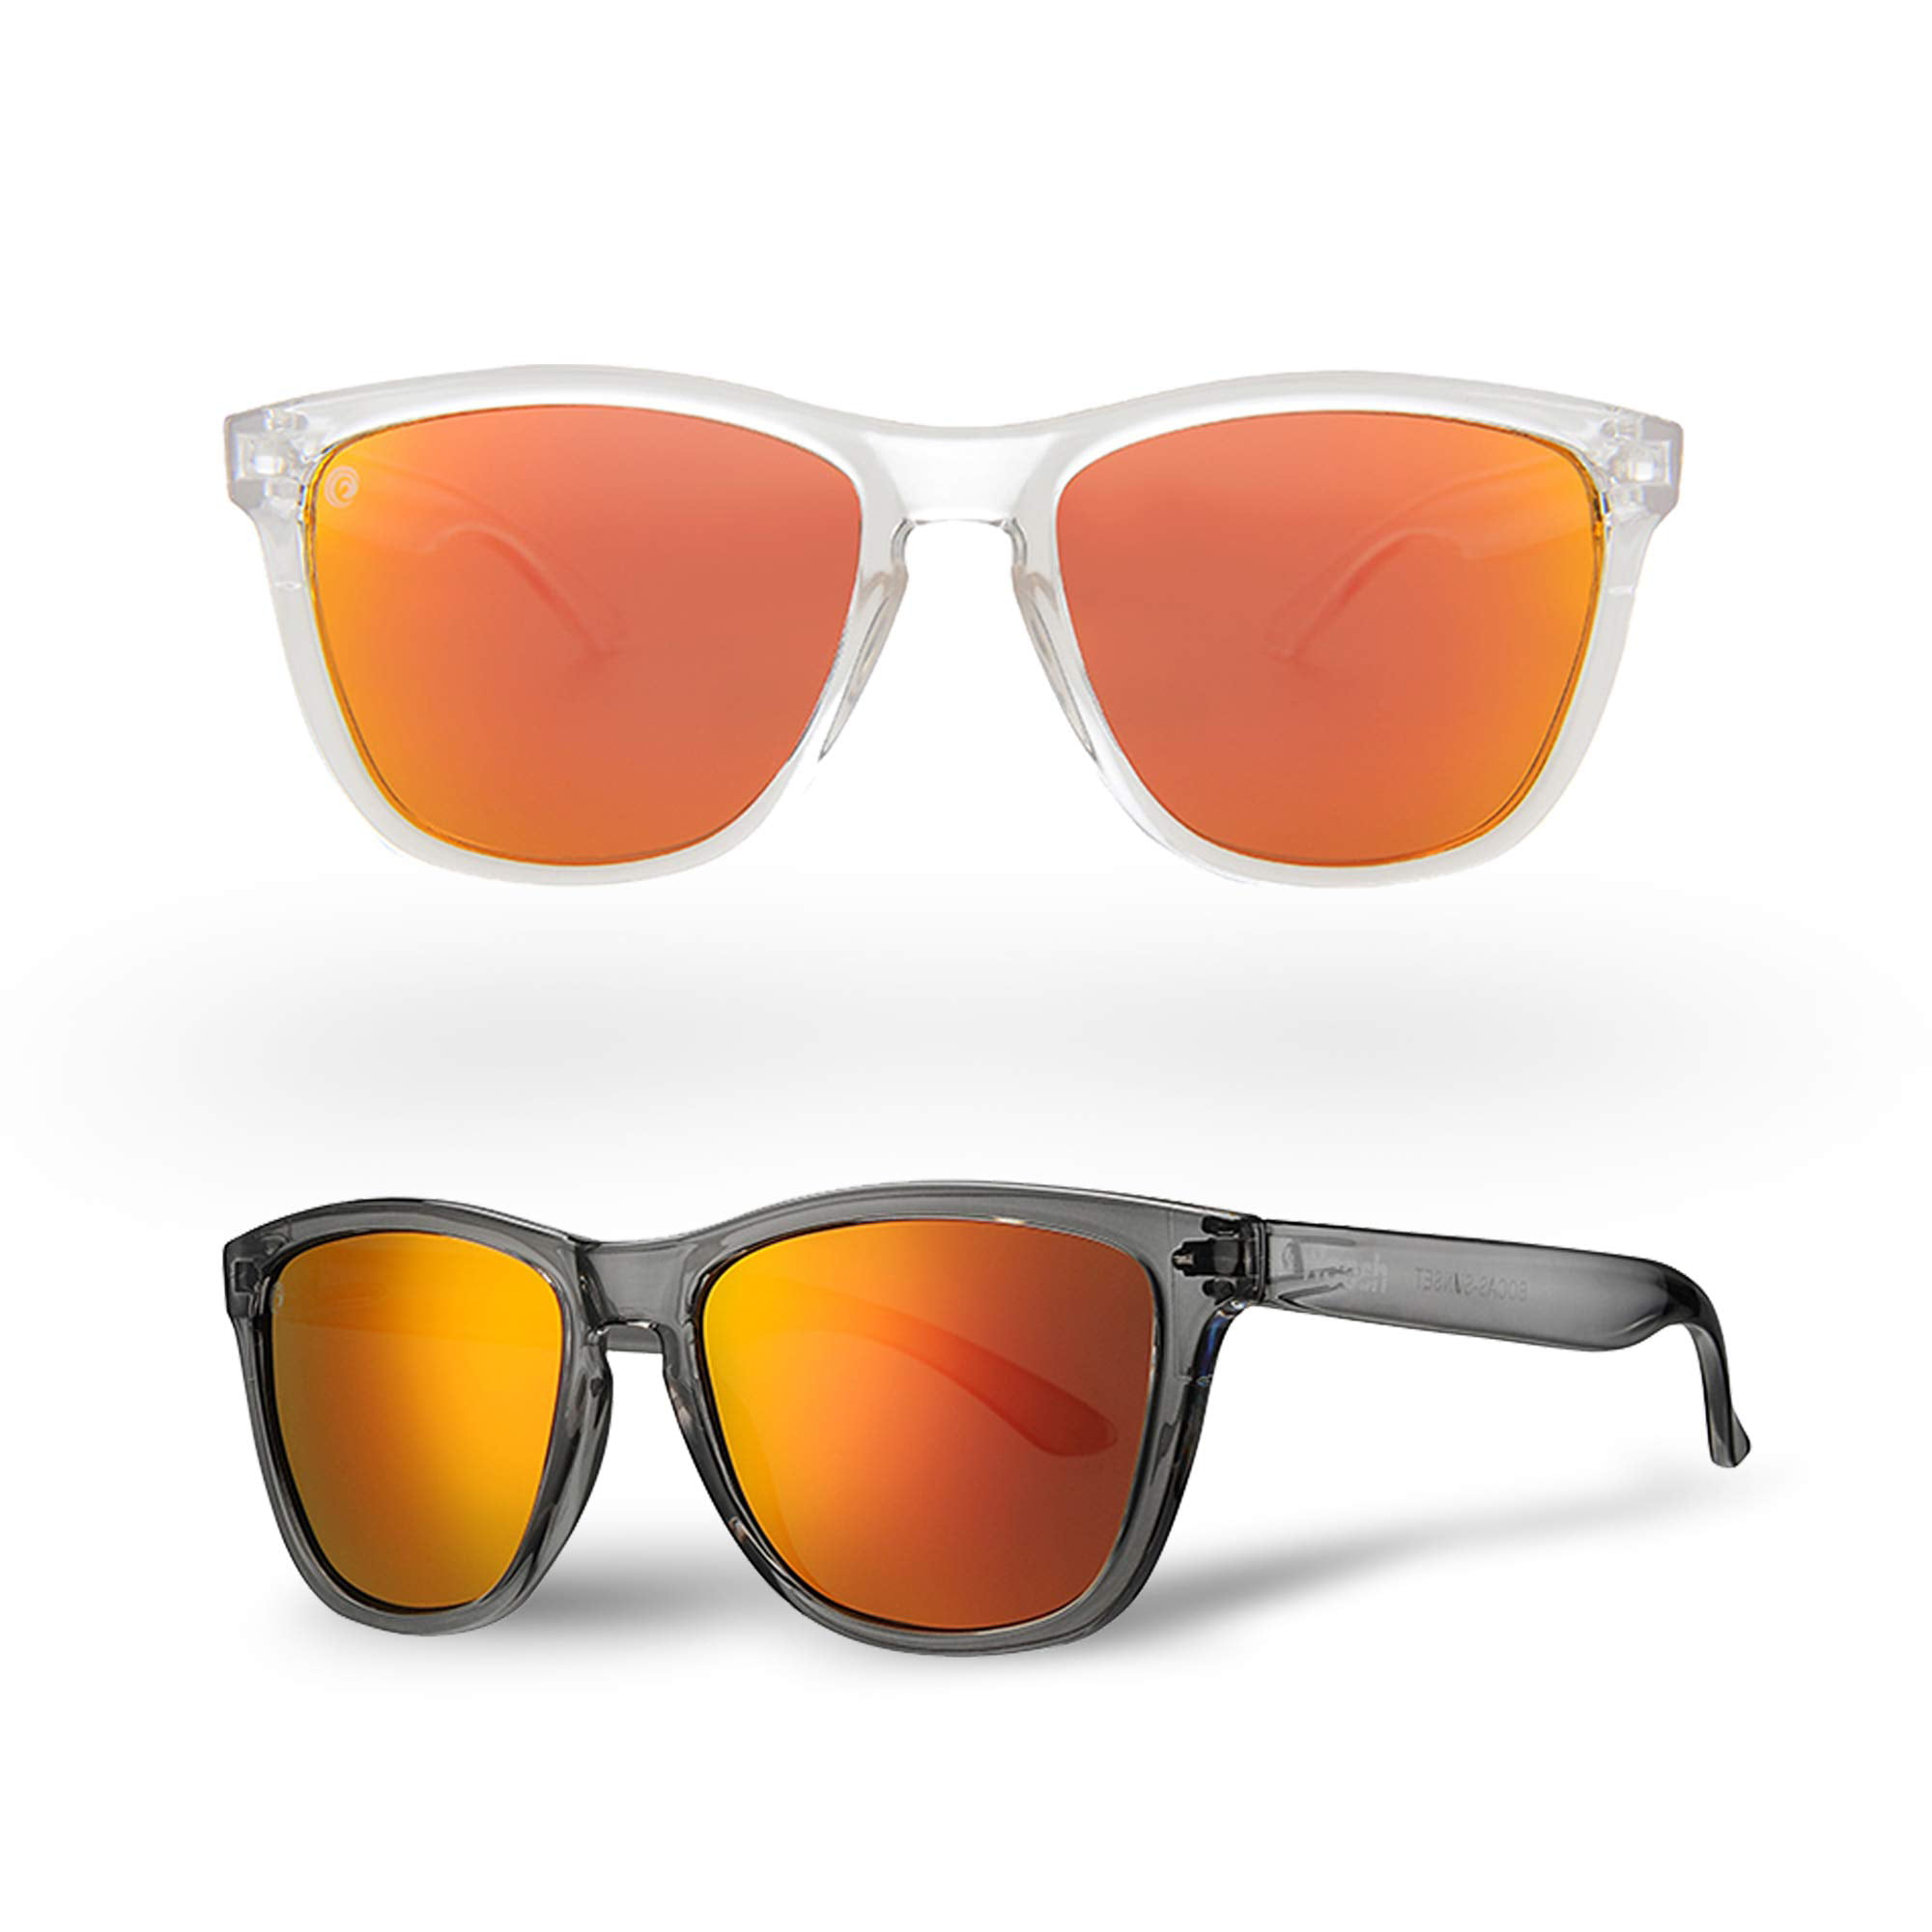 Crimson Sunset - Best Polarized Fishing Sunglasses